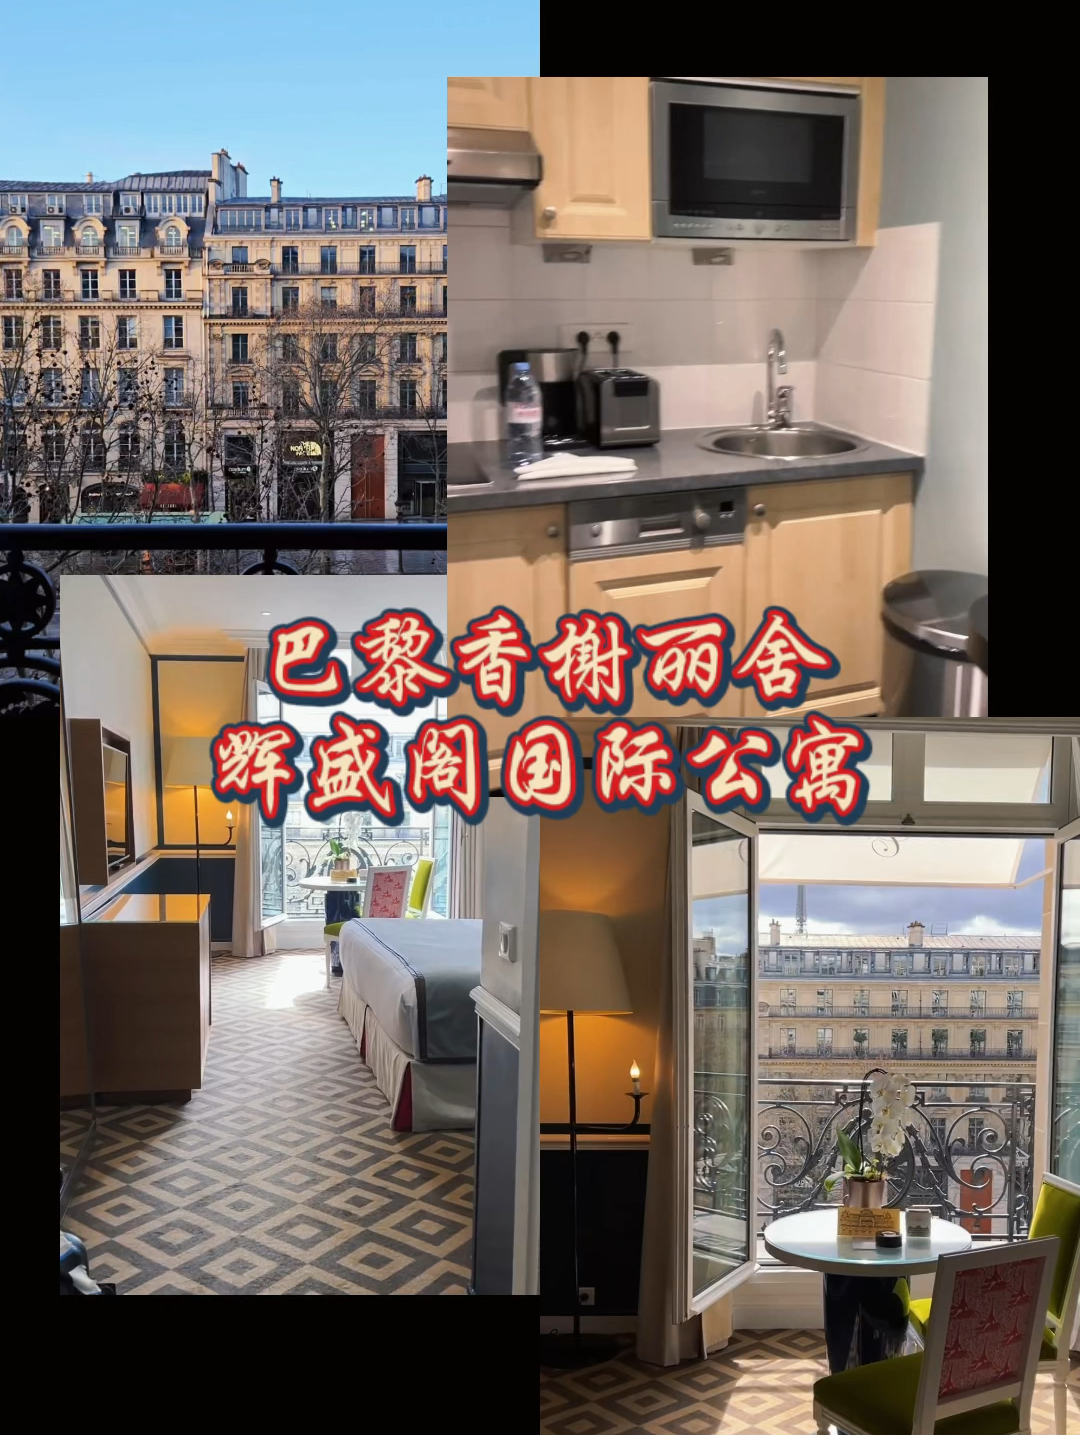 巴黎香榭丽舍辉盛阁国际公寓——尽享香榭丽舍的奢华与优雅